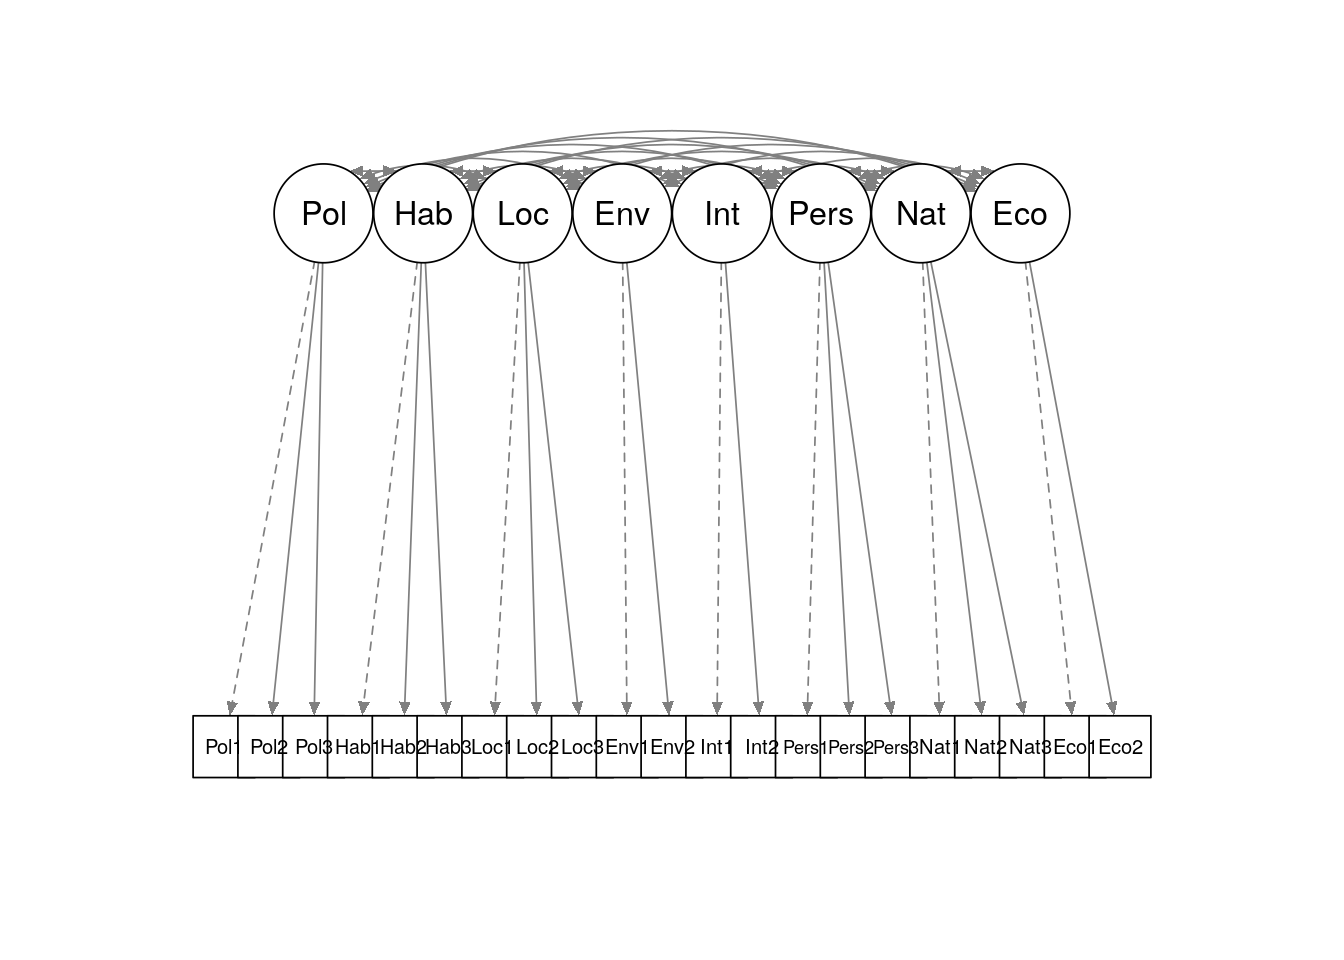 Simple path diagram showing proposed measurement model for `politics_survey`